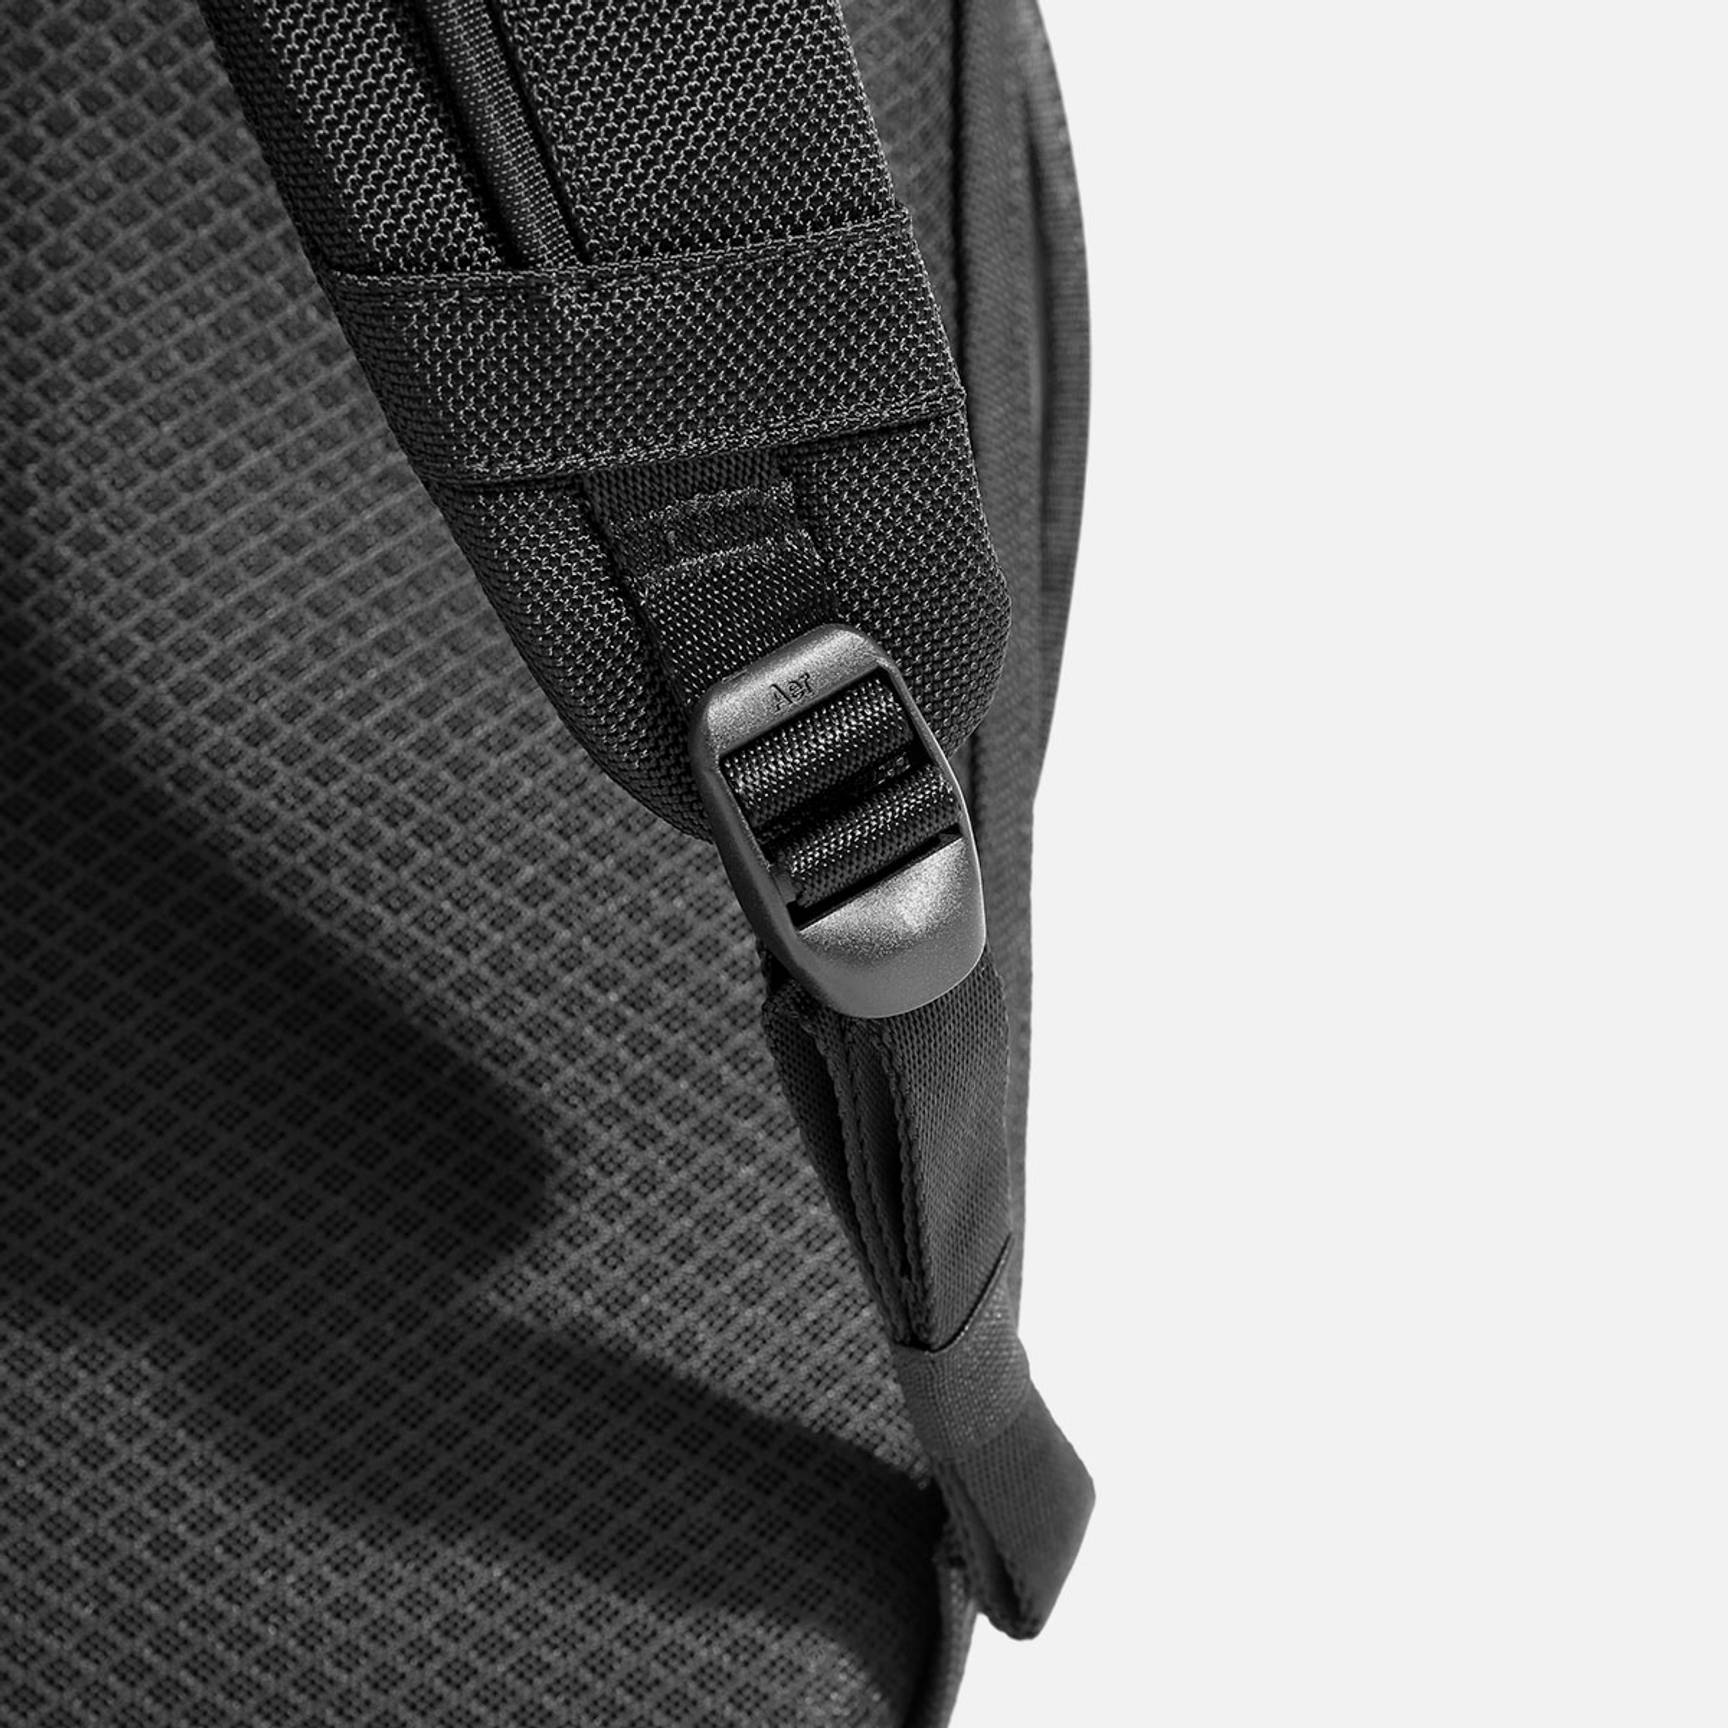 3-Zipper Backpack